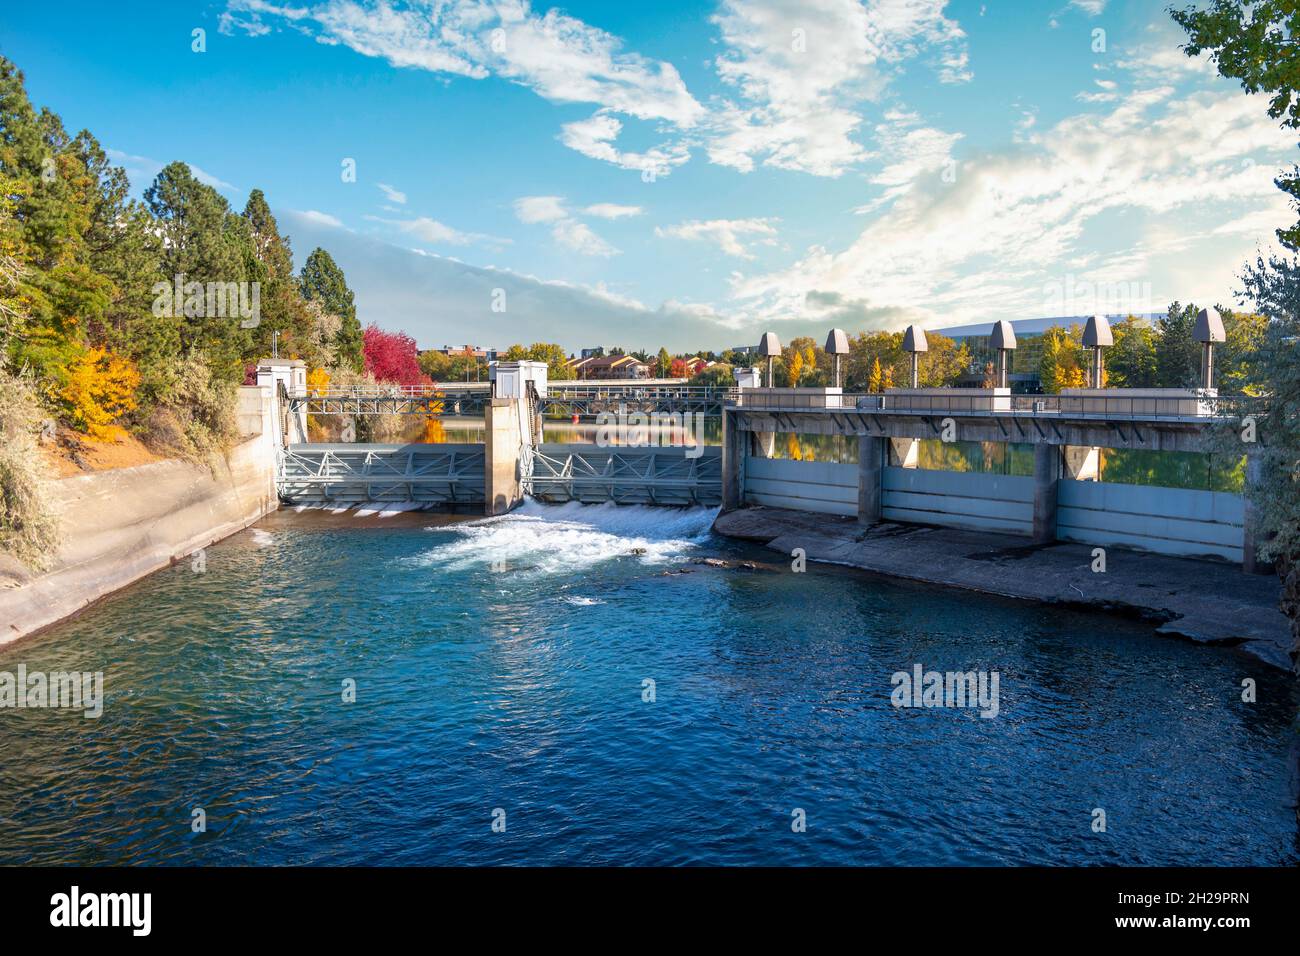 Le réservoir et barrage d'Upper Falls au parc Riverfront dans le centre-ville de Spokane, Washington, États-Unis avec des feuilles qui se transforment en couleurs d'automne. Banque D'Images